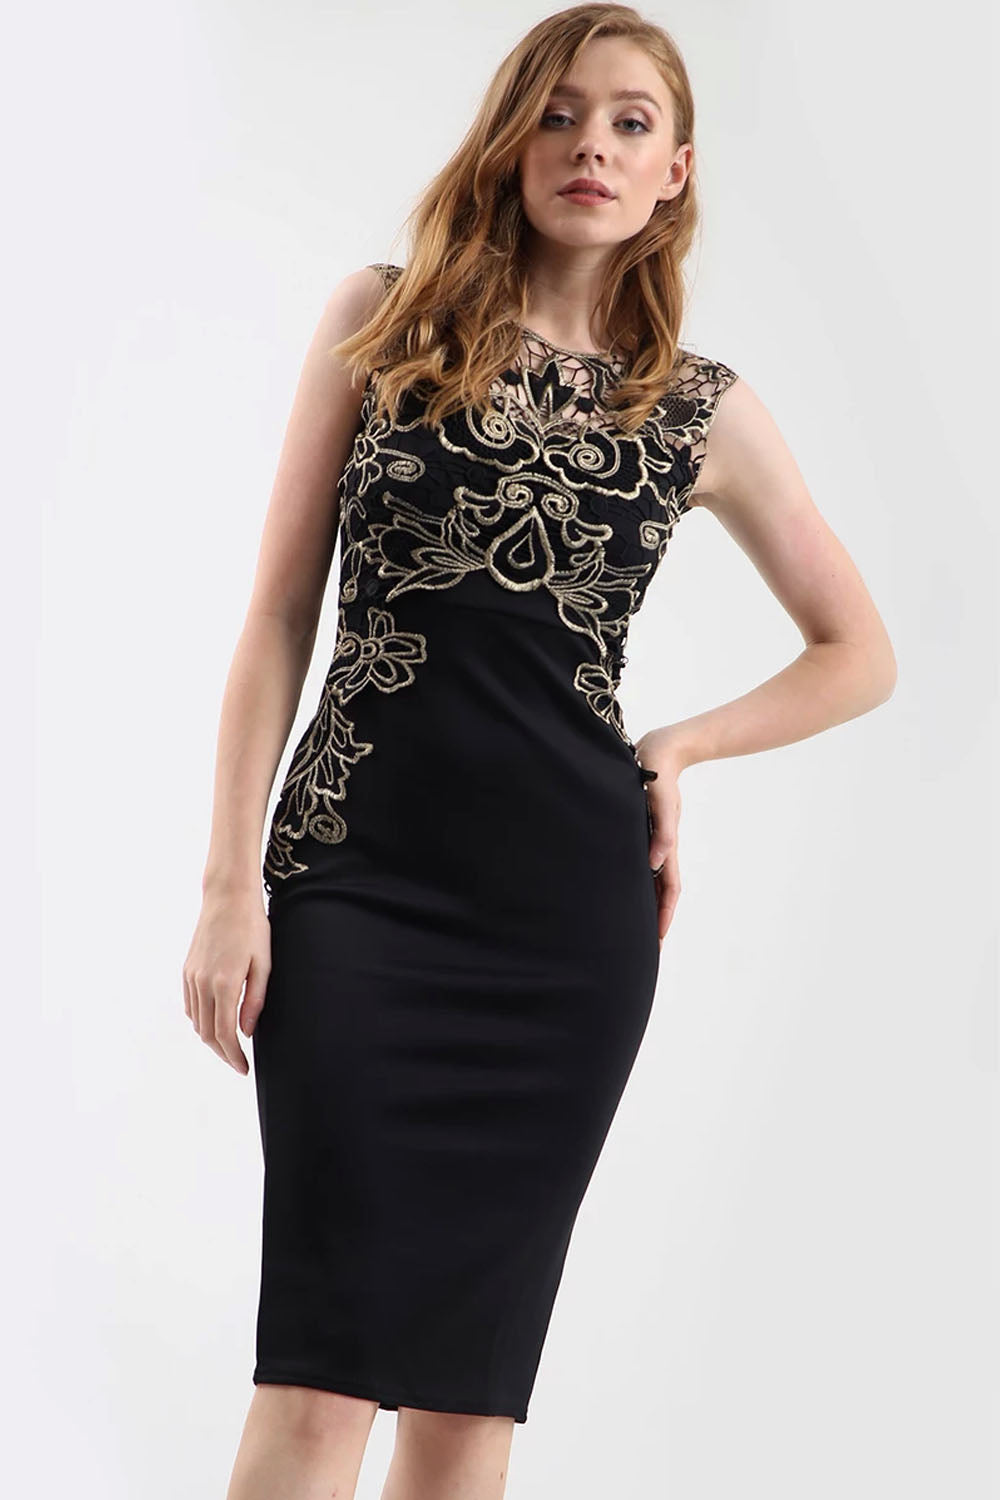 Gold Floral Lace Trim Black Midi Bodycon Dress - bejealous-com